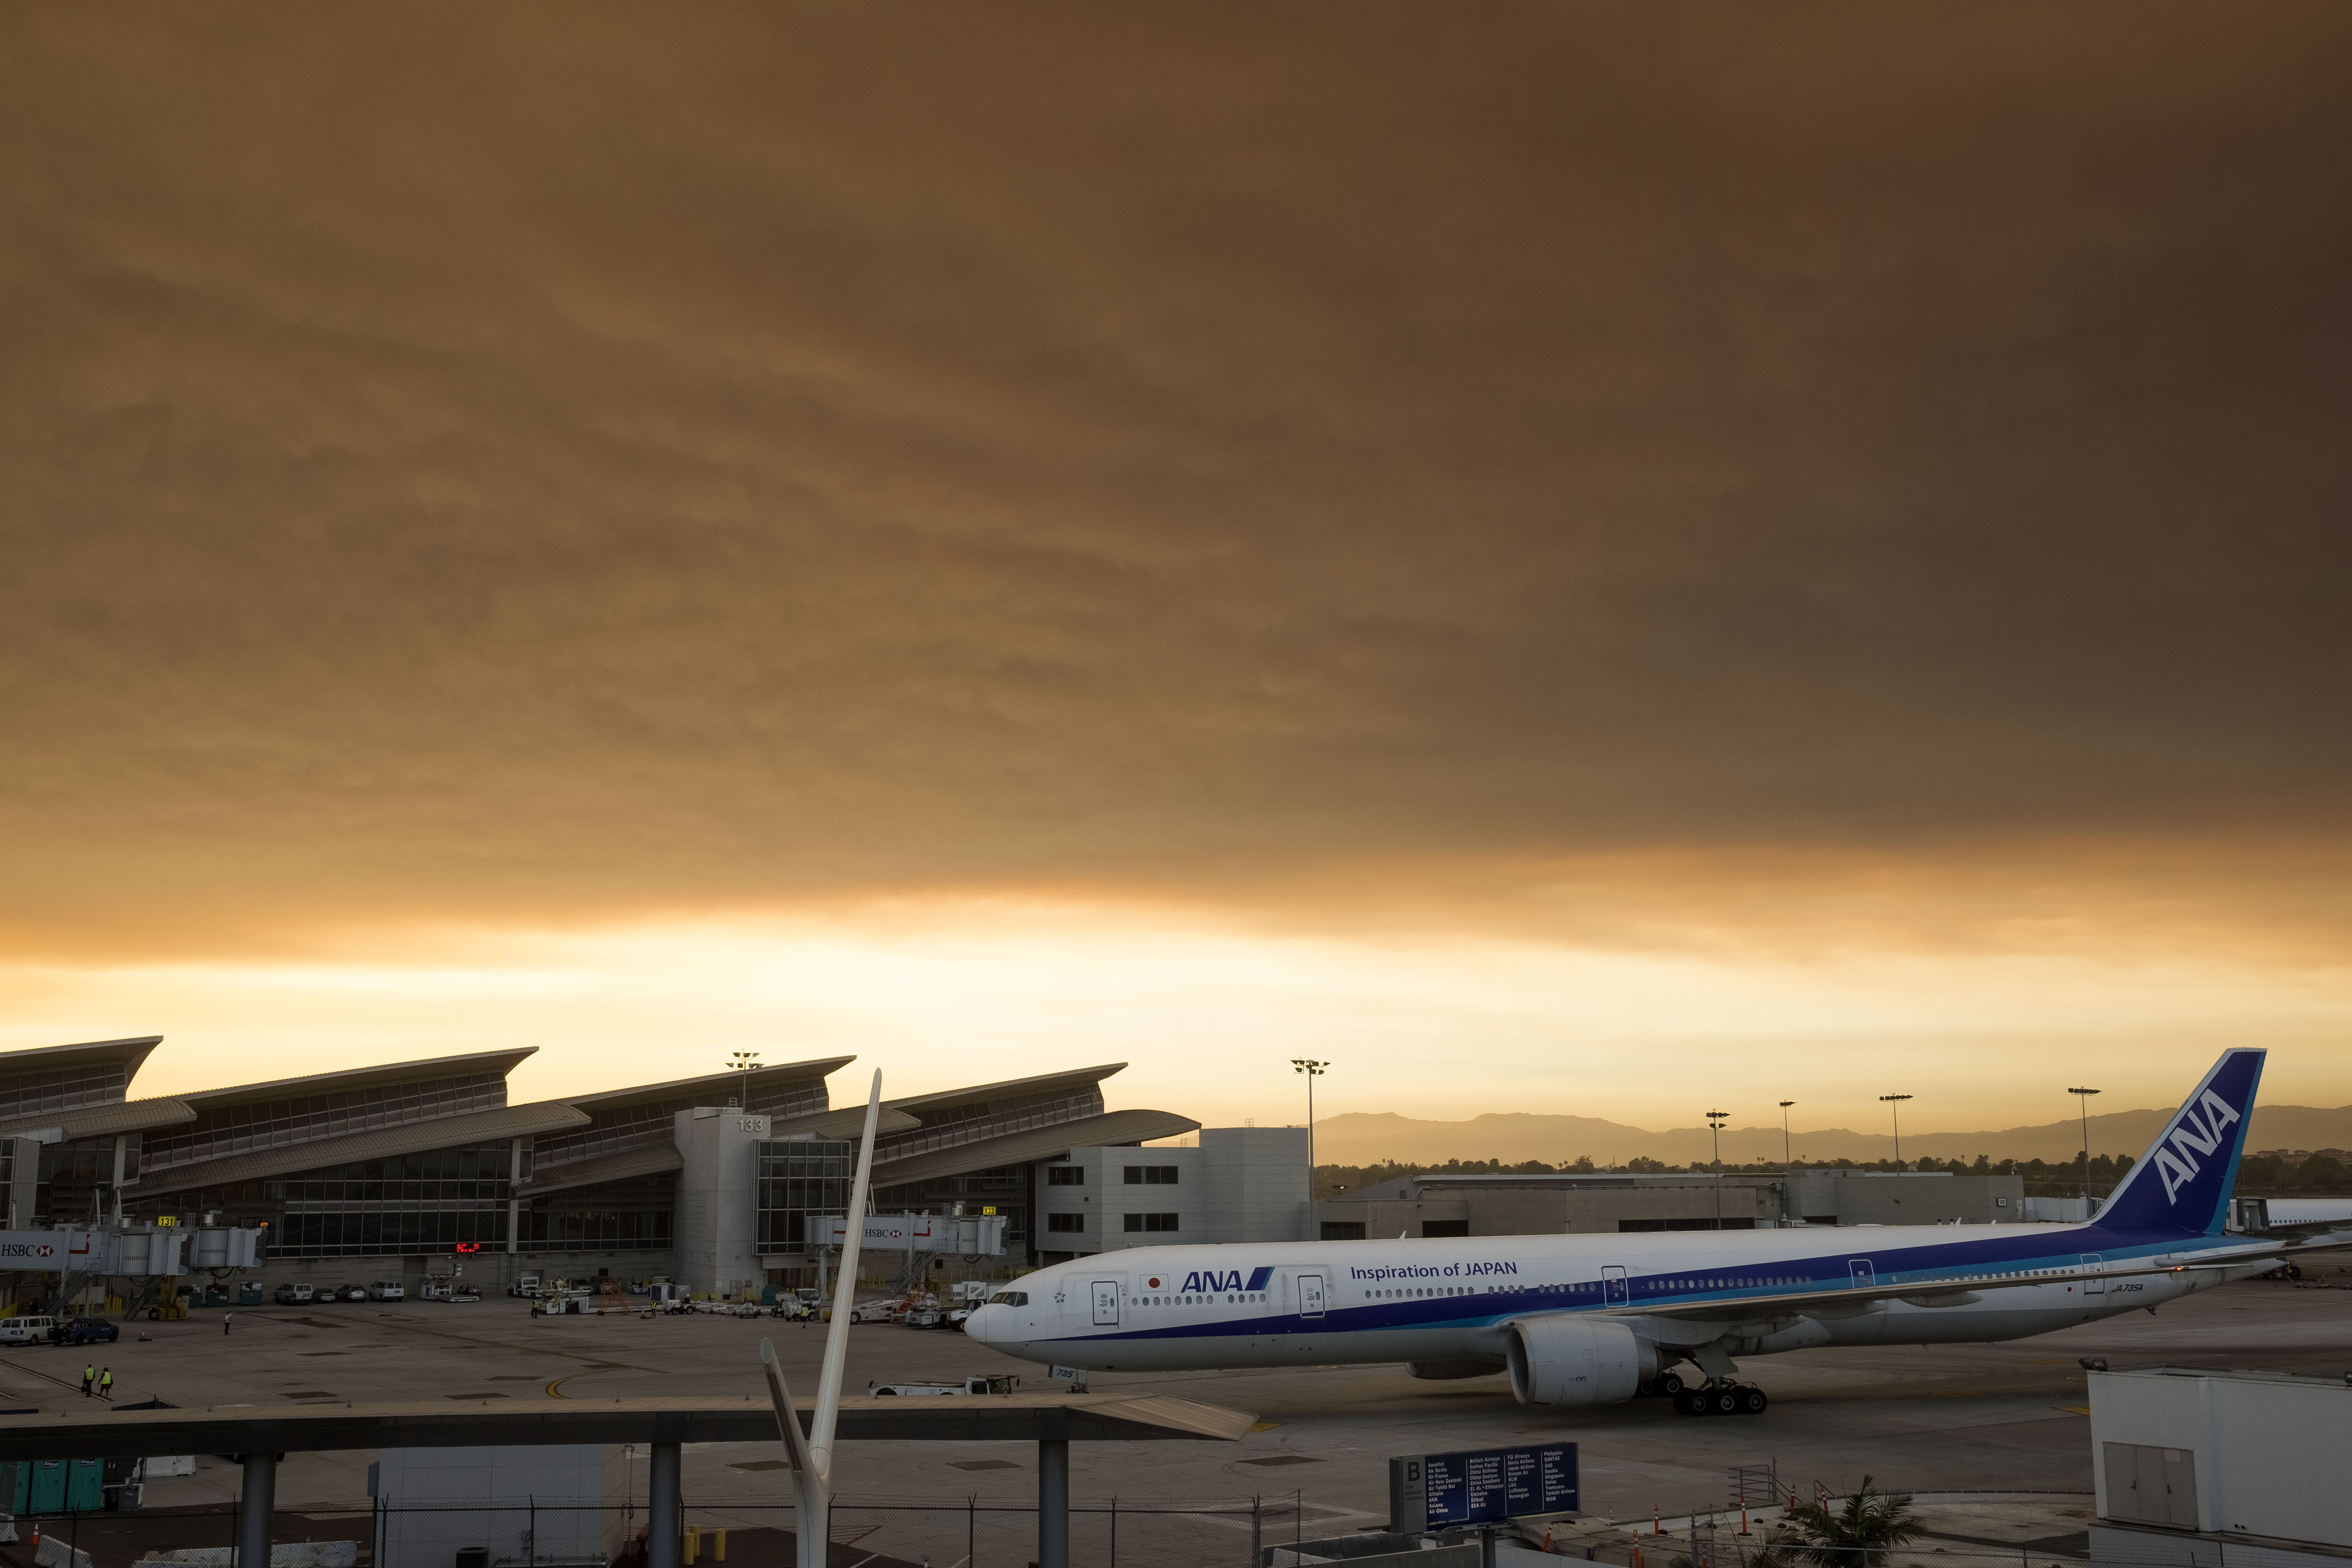 Apokaliptikus látványt fest az ég Los Angeles felett